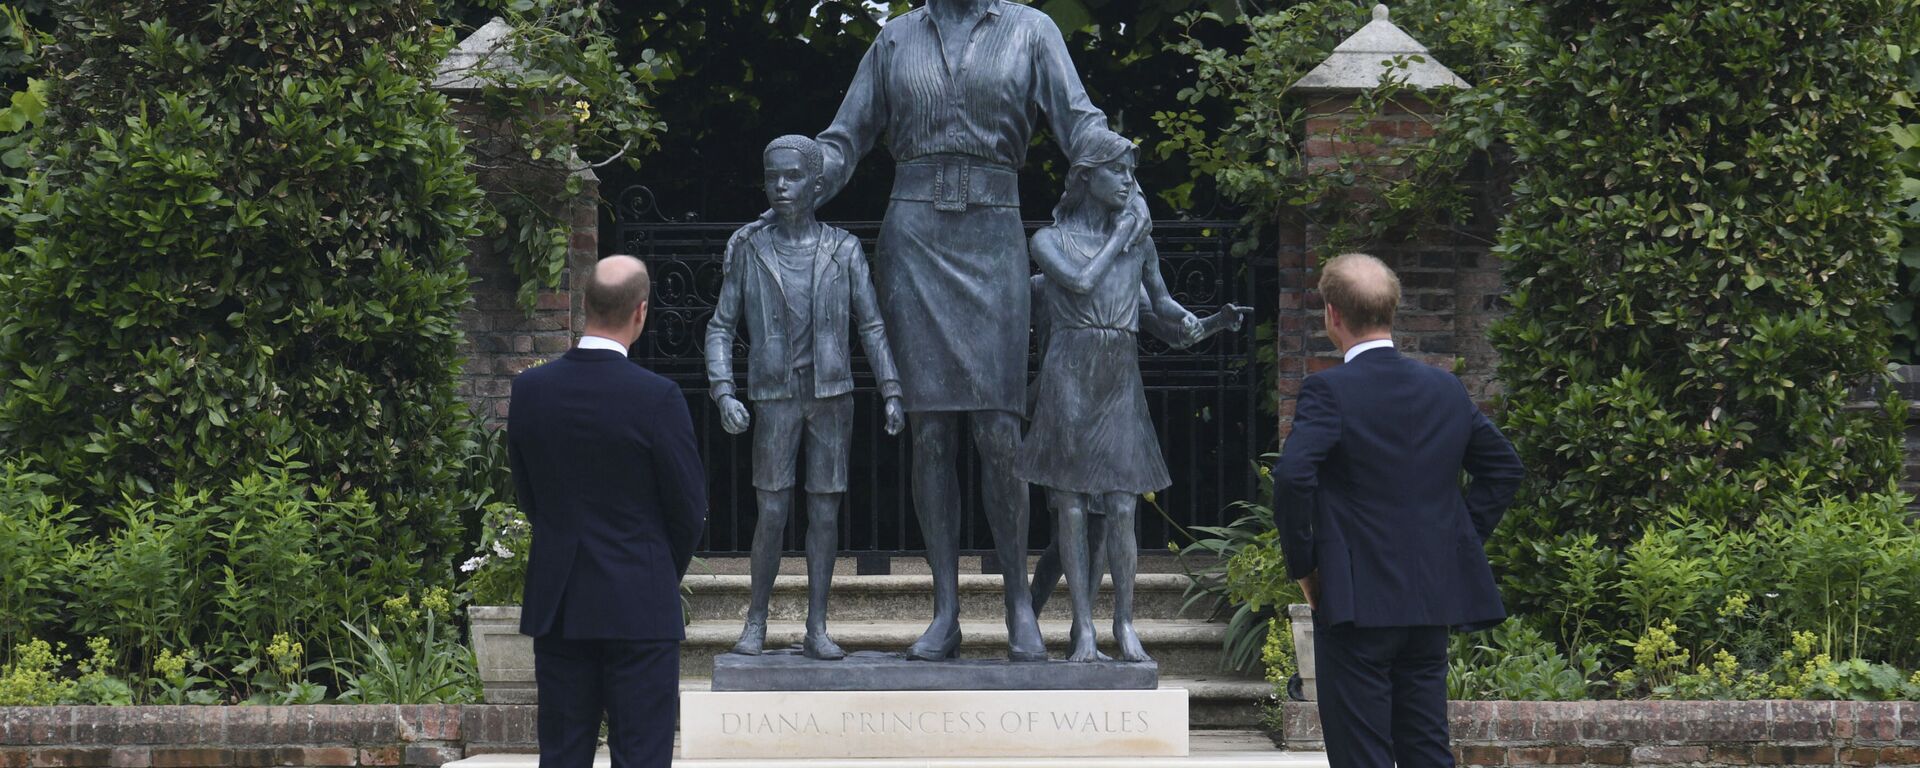 Принц Уильям и принц Гарри у памятника своей матери принцессе Диане в саду Кенсингтонского дворца в Лондоне, Великобритания - Sputnik Грузия, 1920, 02.07.2021